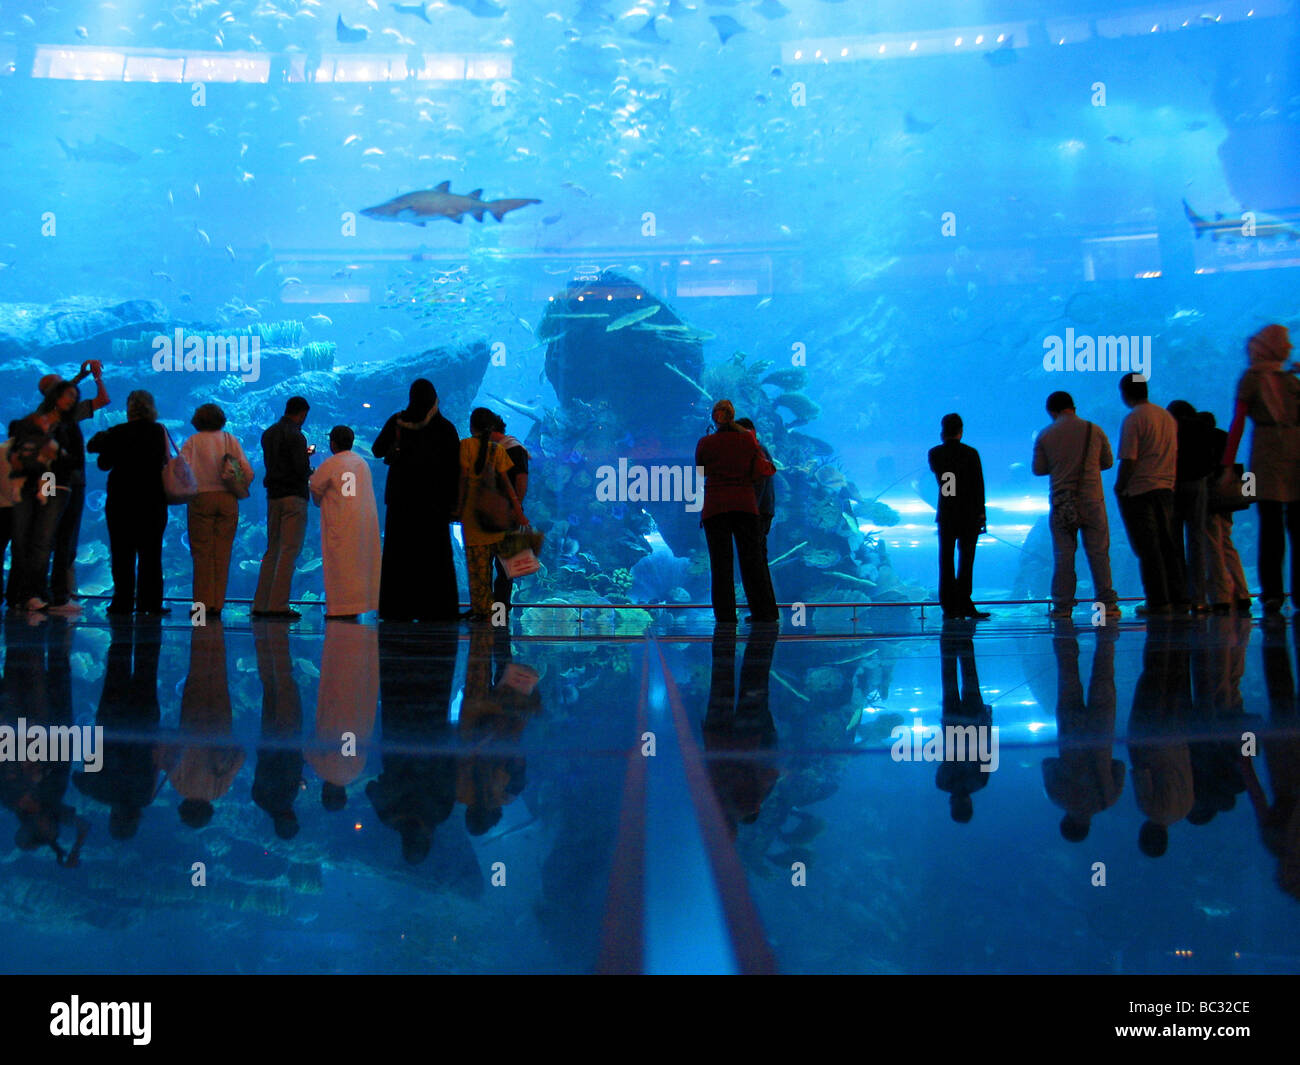 Biggest aquarium in the world at the Dubai Aquarium and Discovery Centre  Stock Photo - Alamy